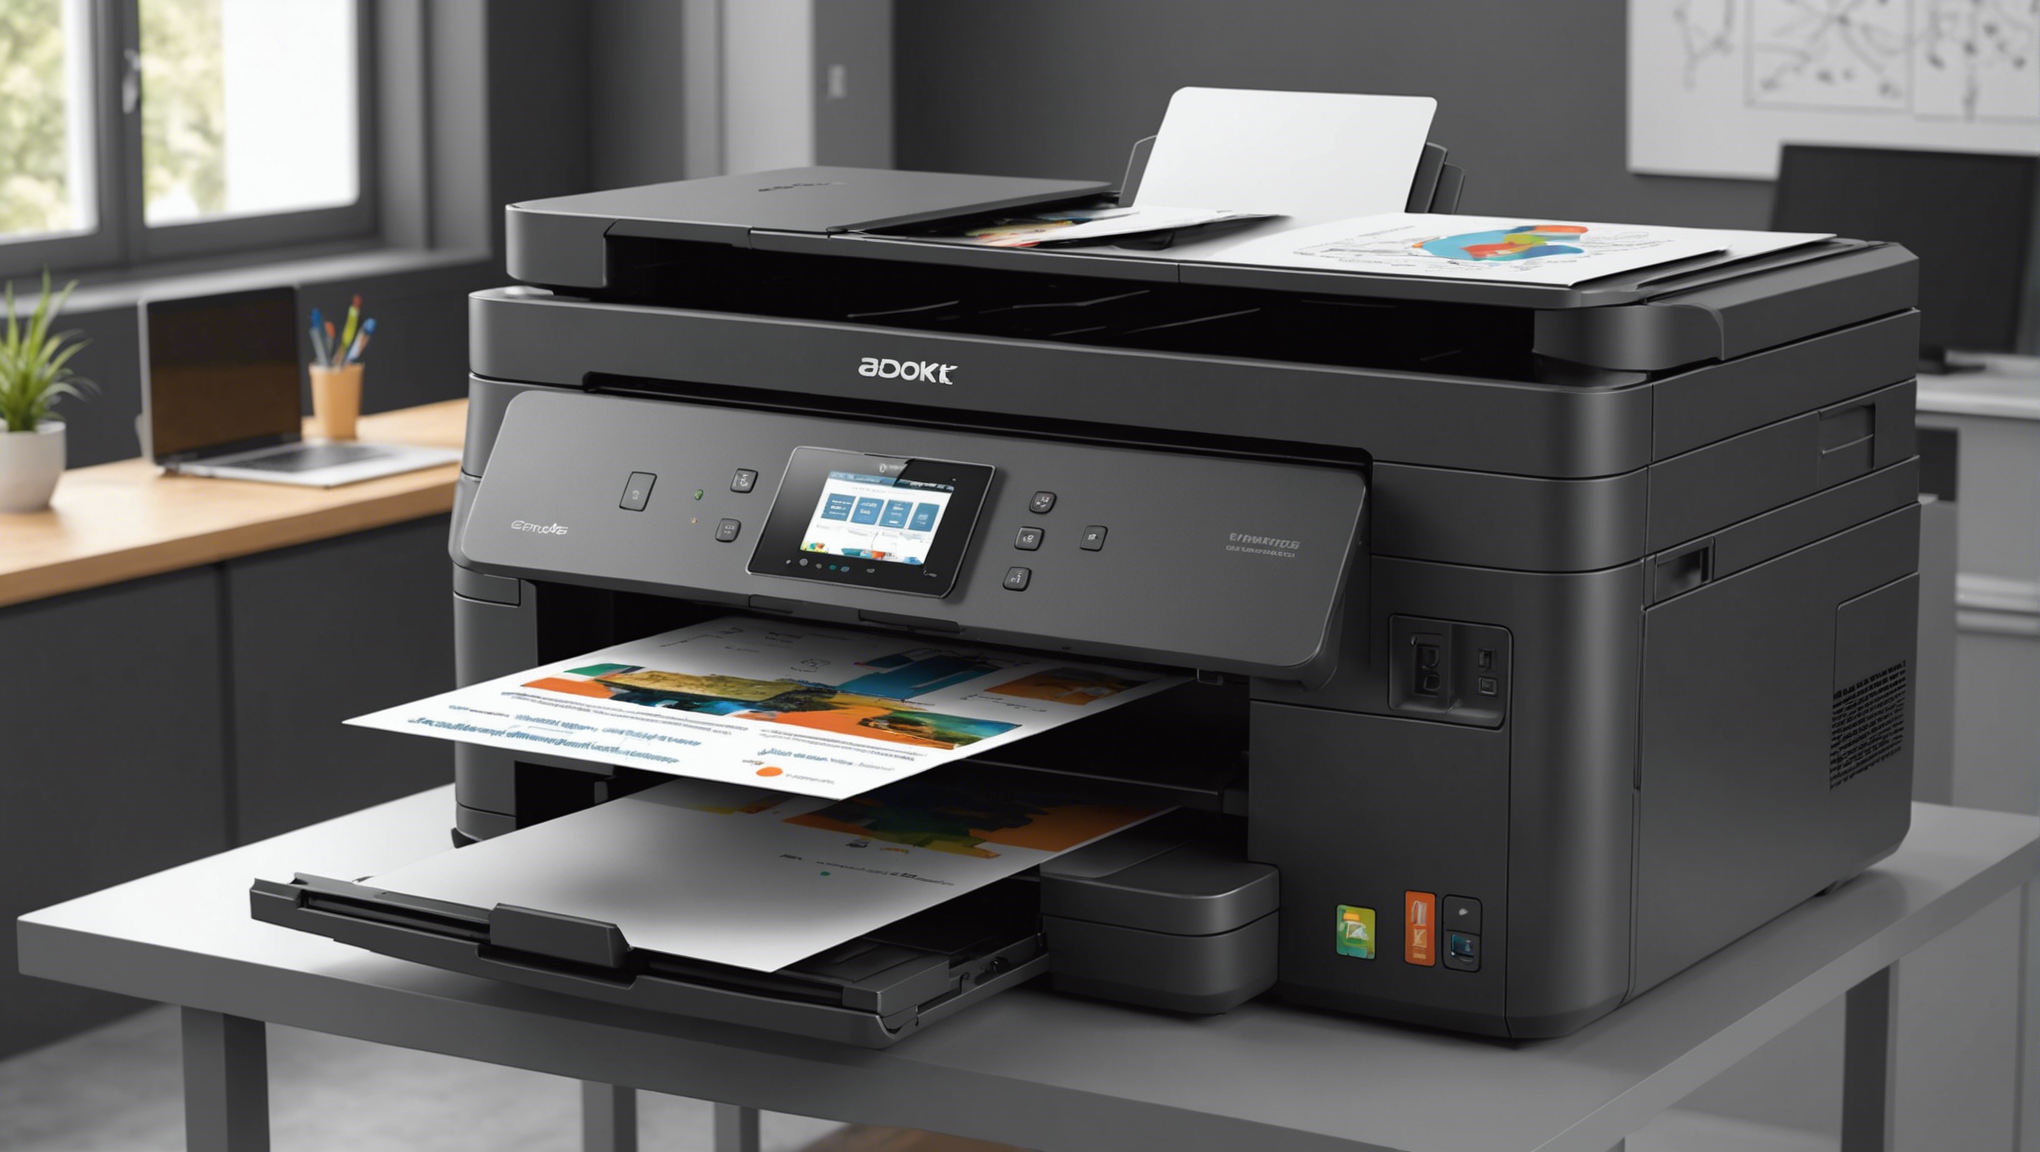 découvrez comment les imprimantes grand format offrent des solutions professionnelles à prix abordables dans divers secteurs d'activité.